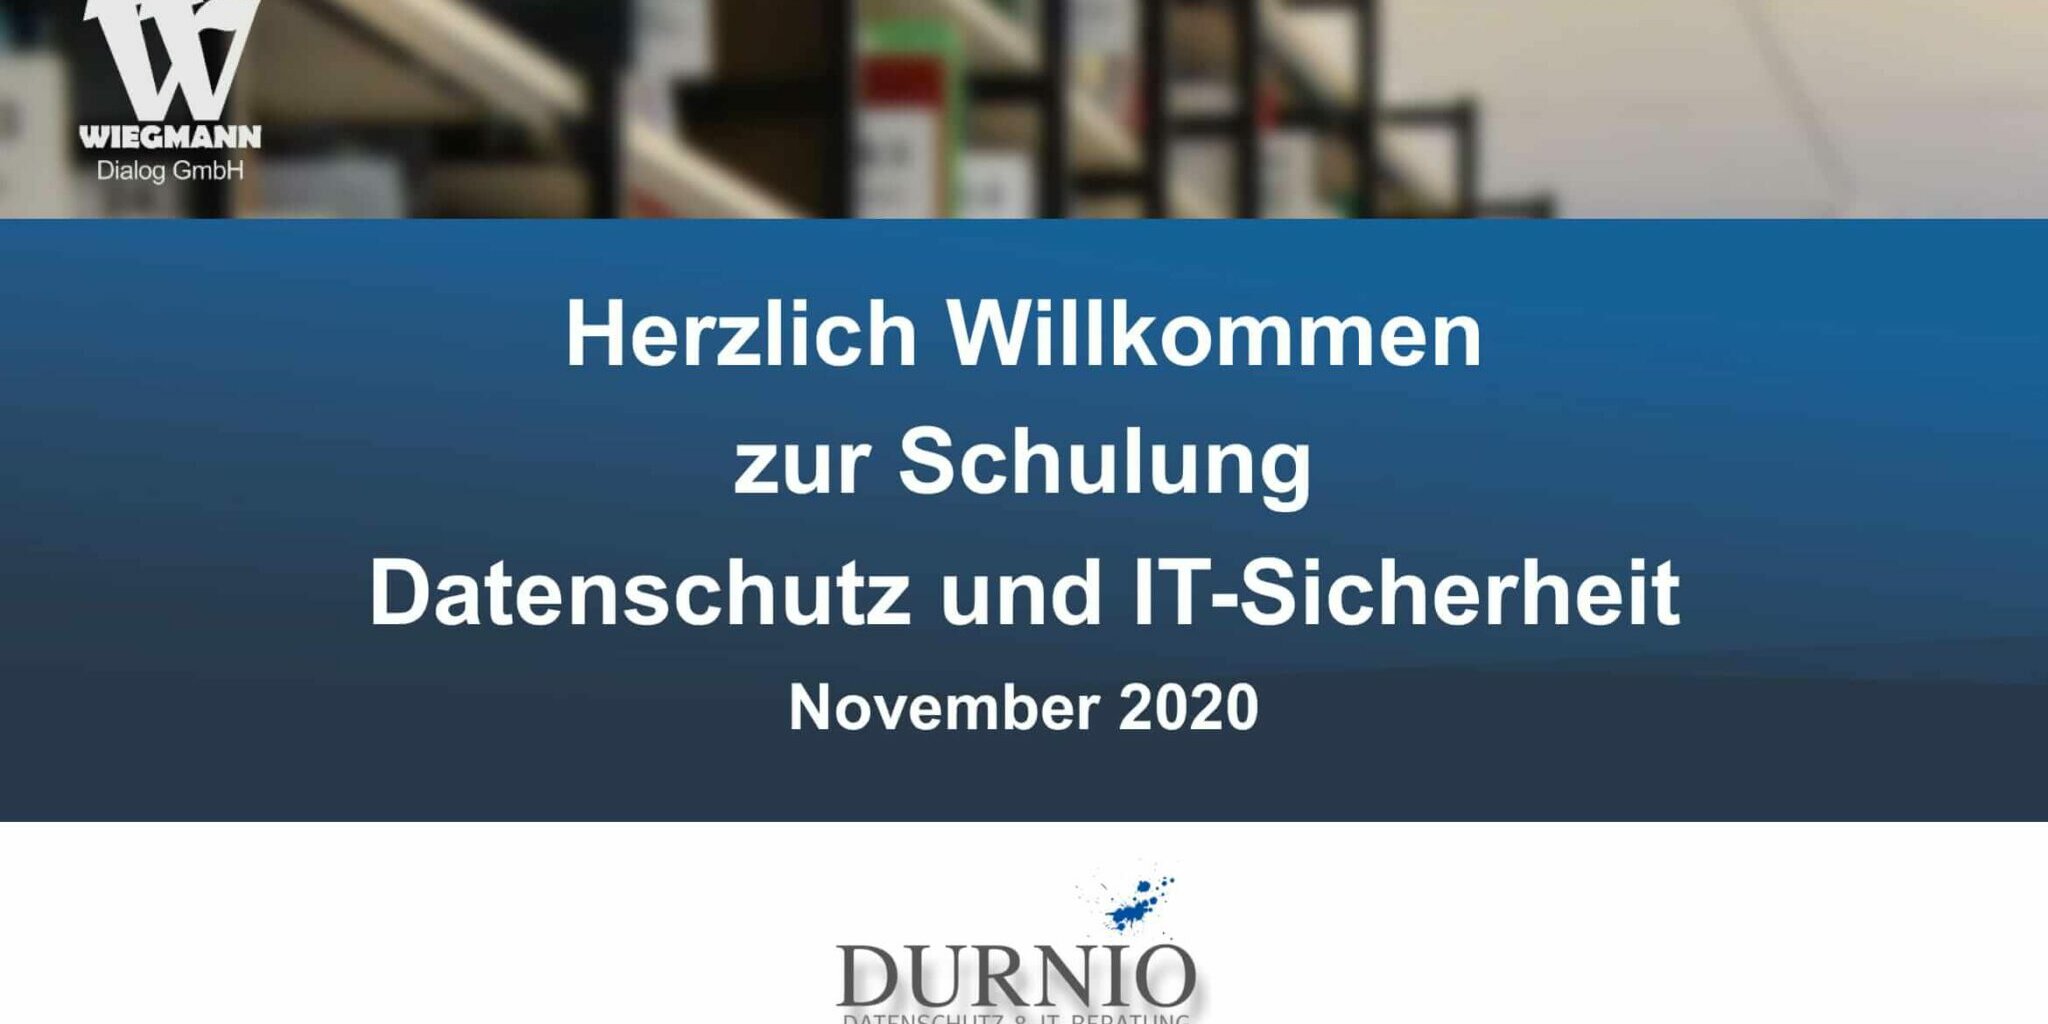 November 2020 Schulung zum Thema Datenschutz und IT-Sicherheit